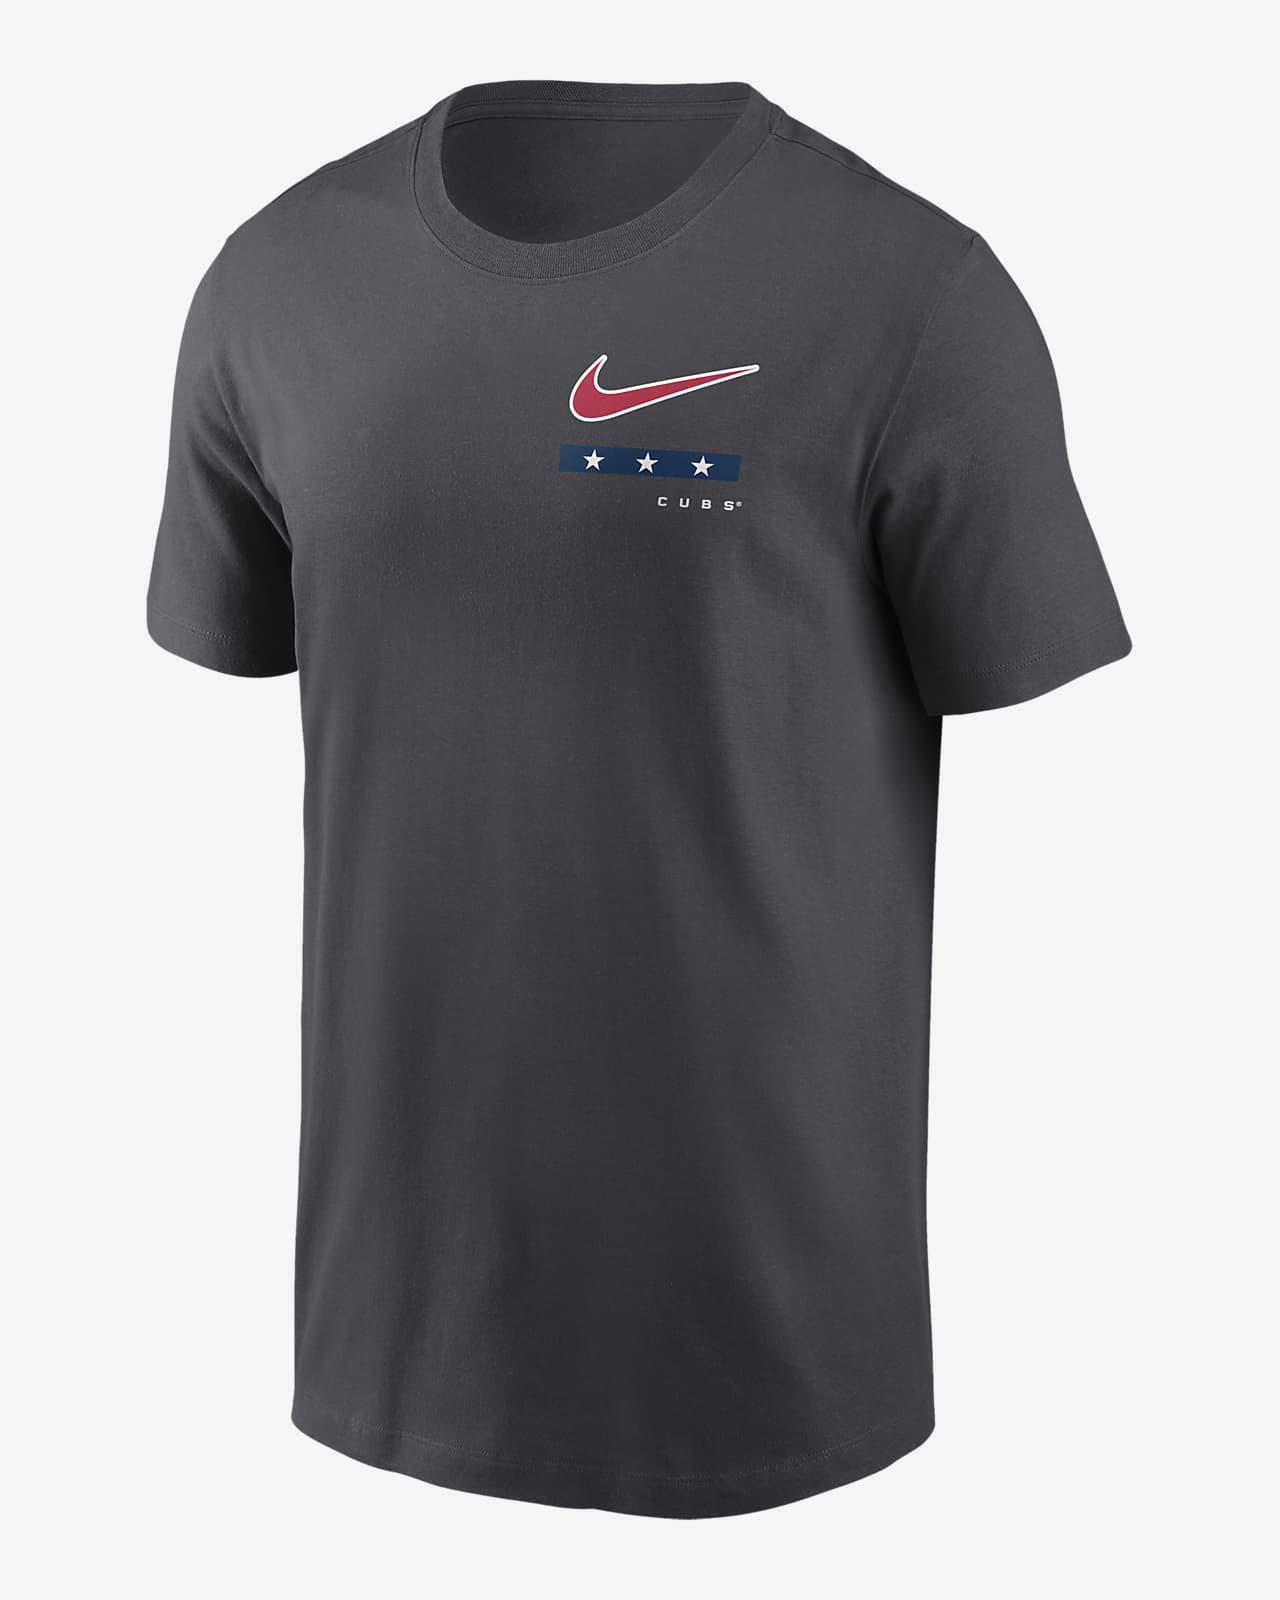 Nike MLB, Shirts, Nike Mlb Chicago Cubs Drifit Tshirt